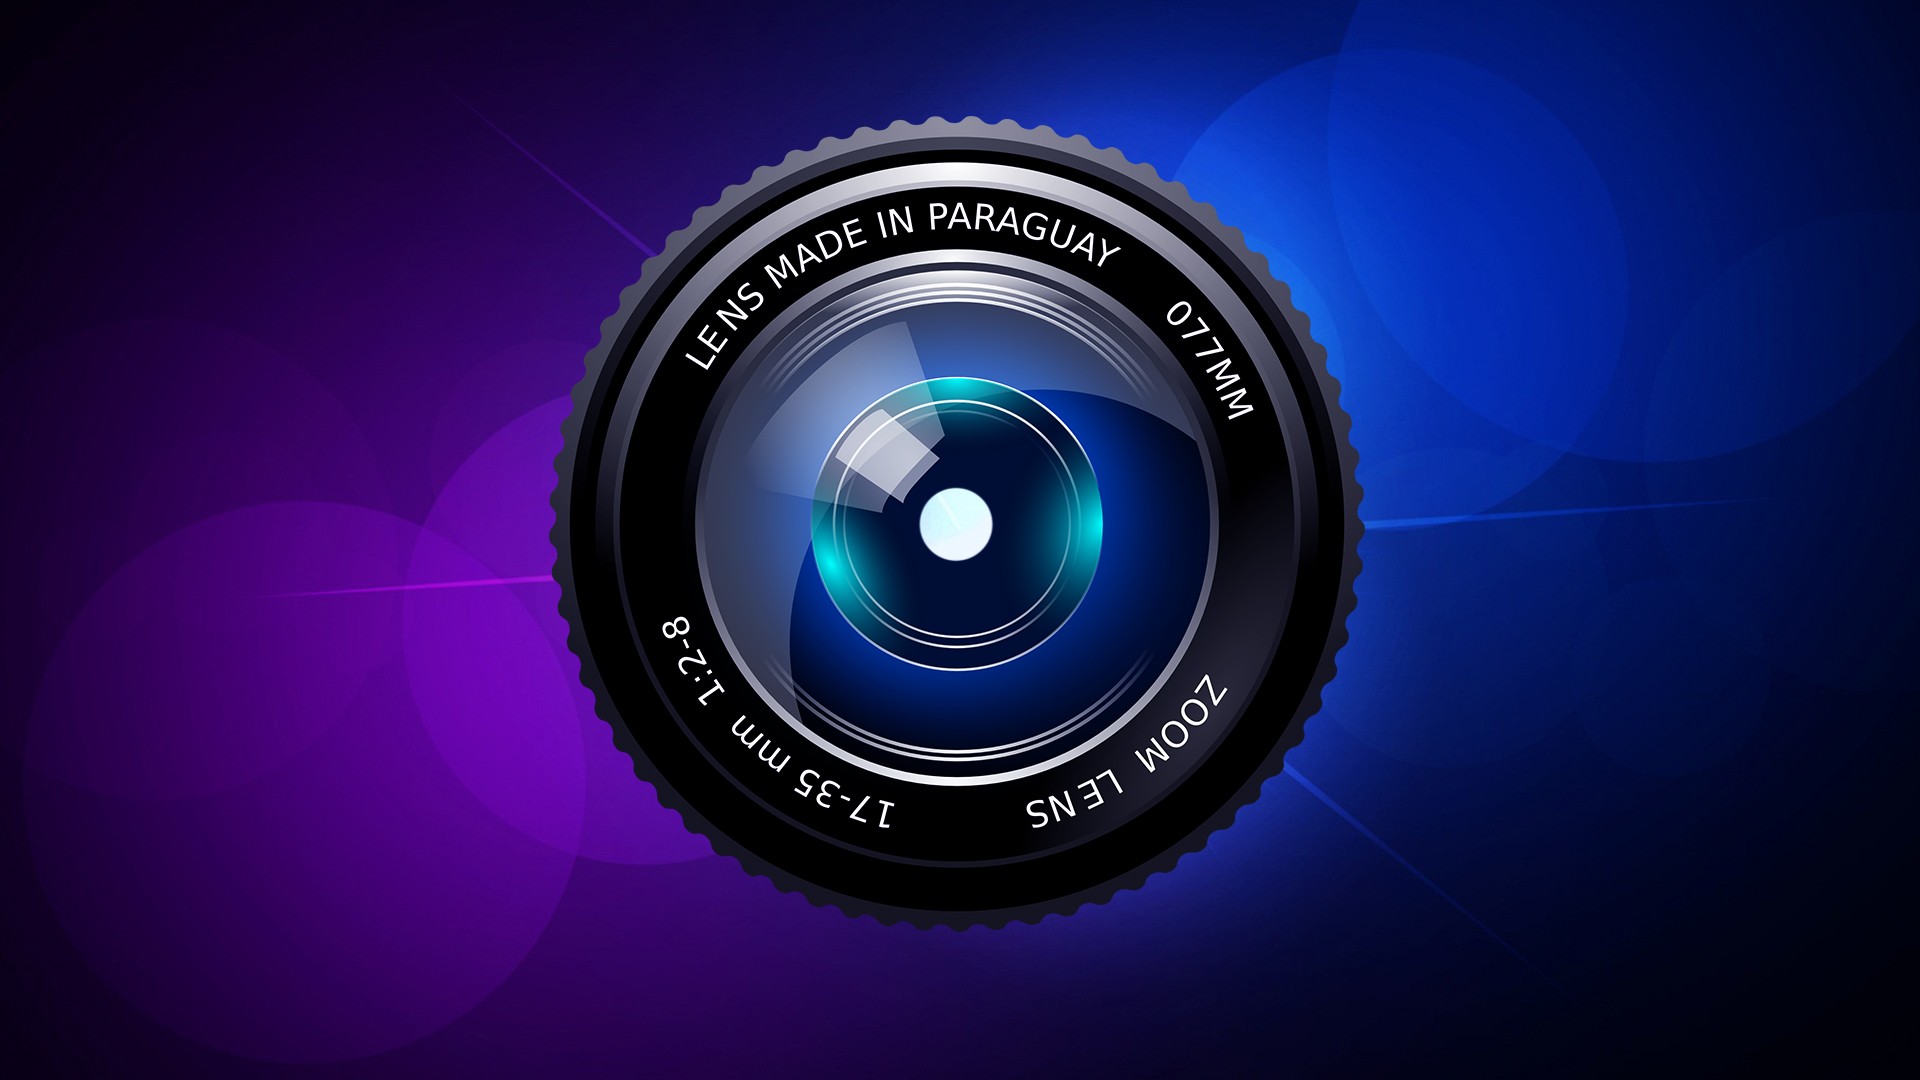 appareil photo hd fonds d'écran,objectif de la caméra,lentille,bleu,produit,caméra